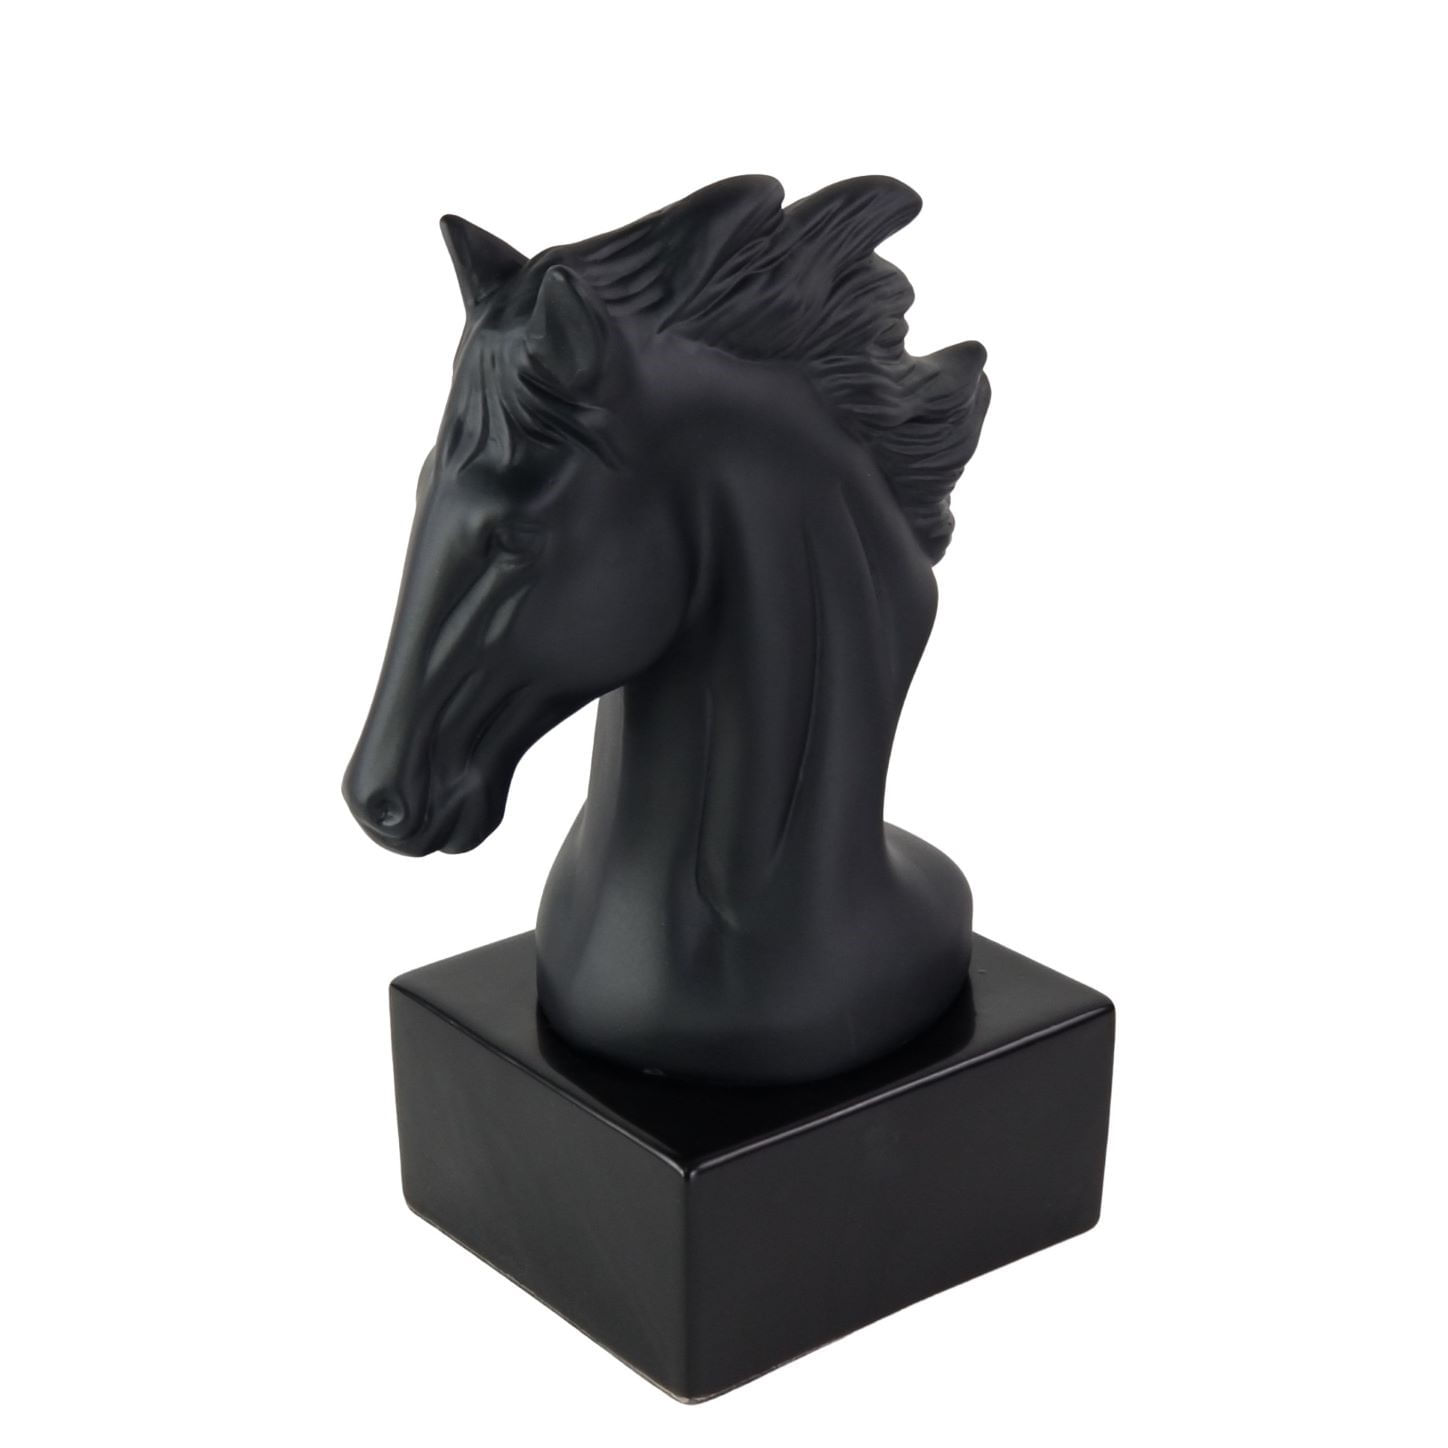 Escultura Decorativa Cavalo Preto em Cerâmica com Base